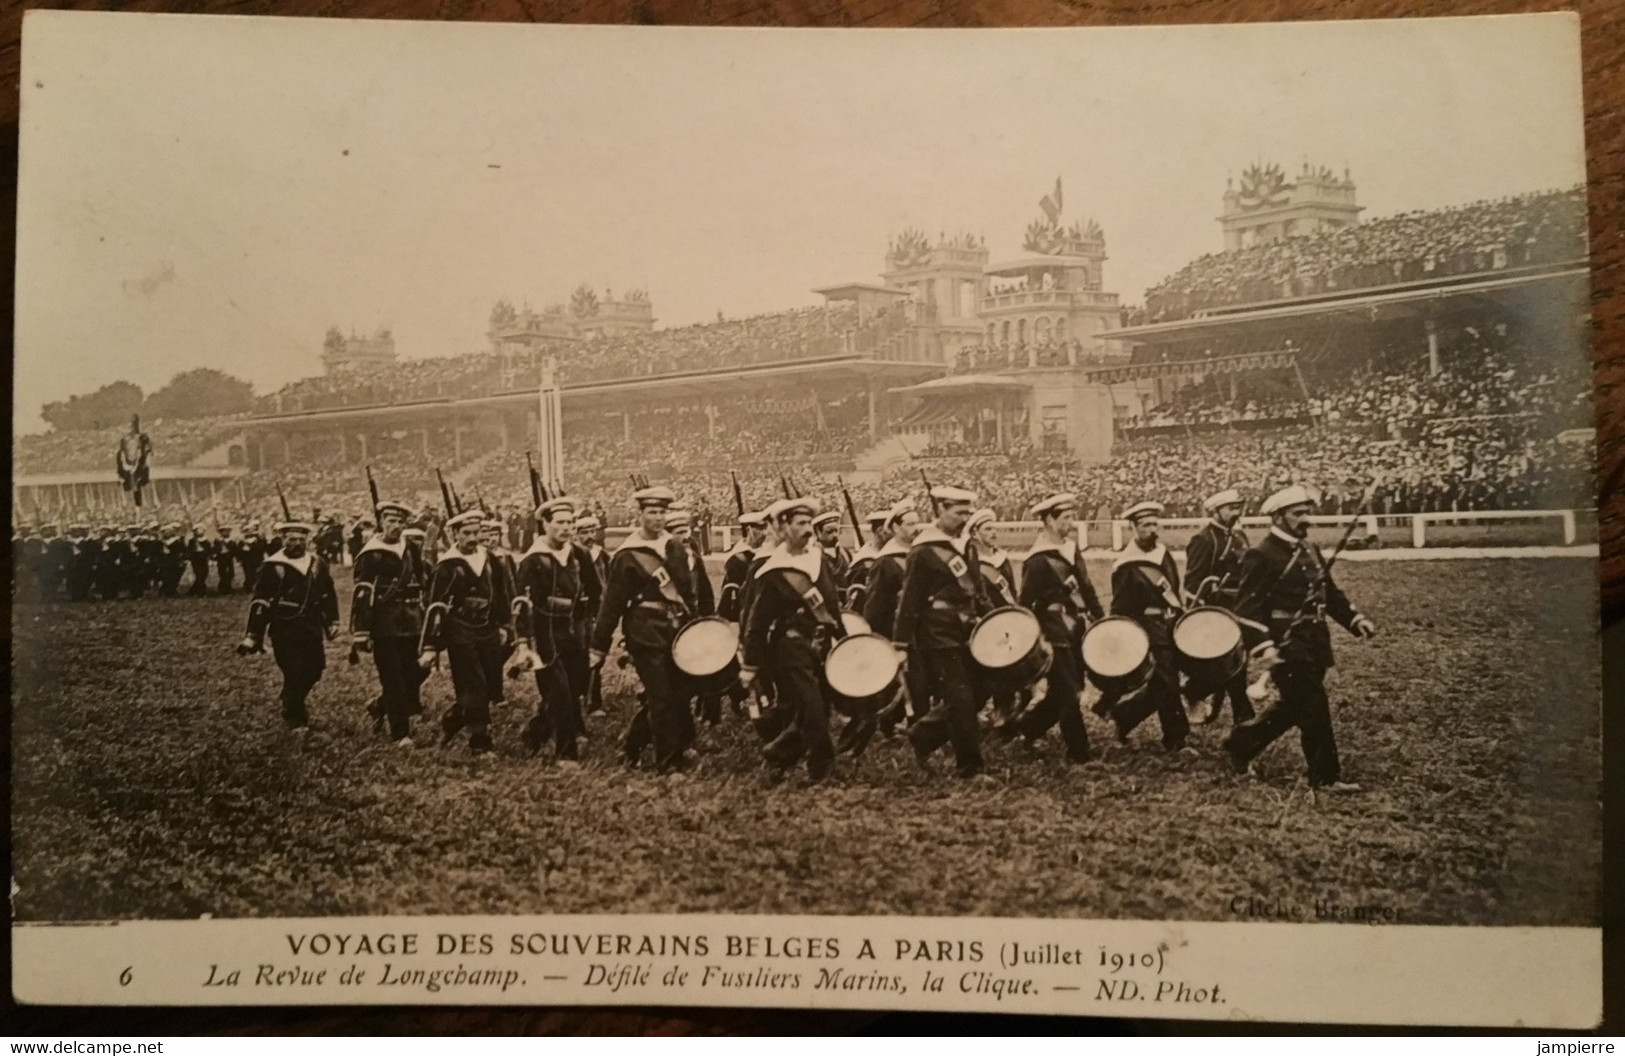 Paris - 20 CPA - Série complète sur le voyage des souverains belges à Paris - juillet 1910